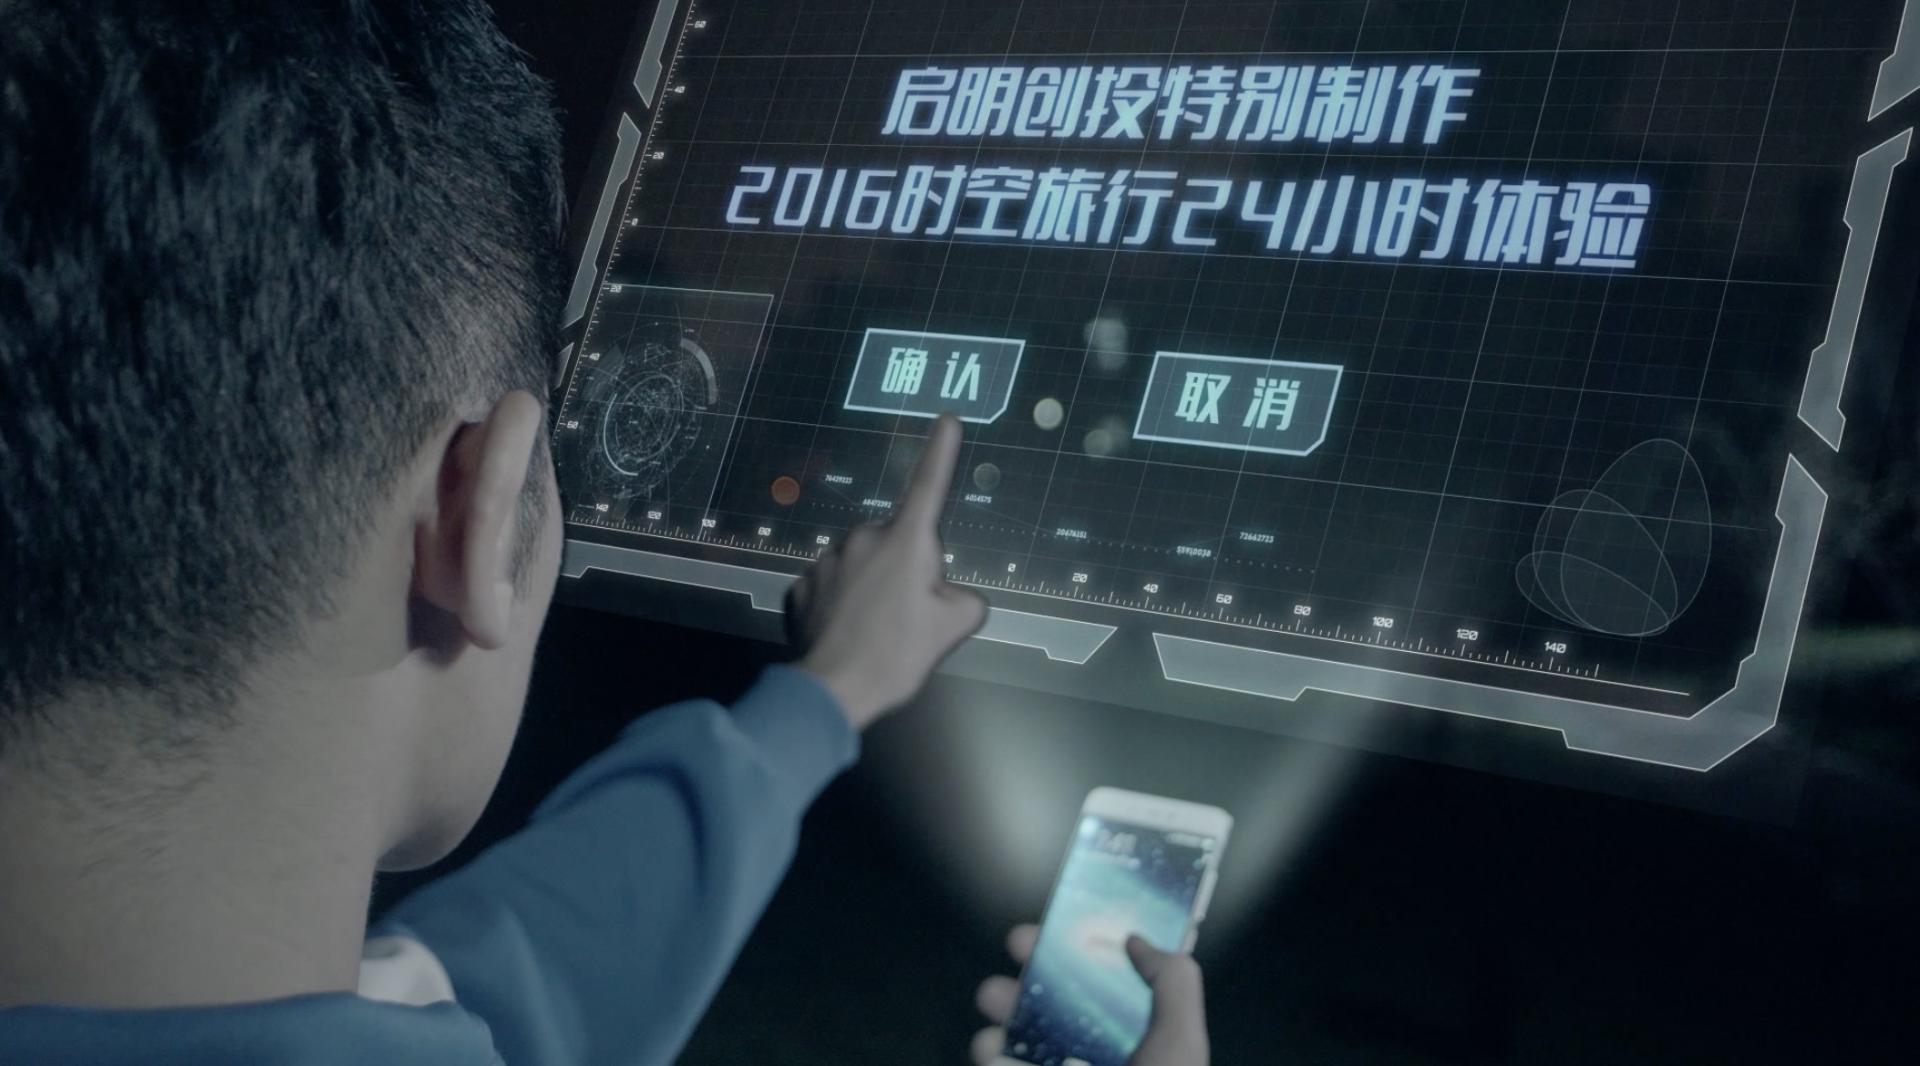 中国创投圈第一支微电影发布，小米摩拜罗辑思维哔哩哔哩知乎……都来了